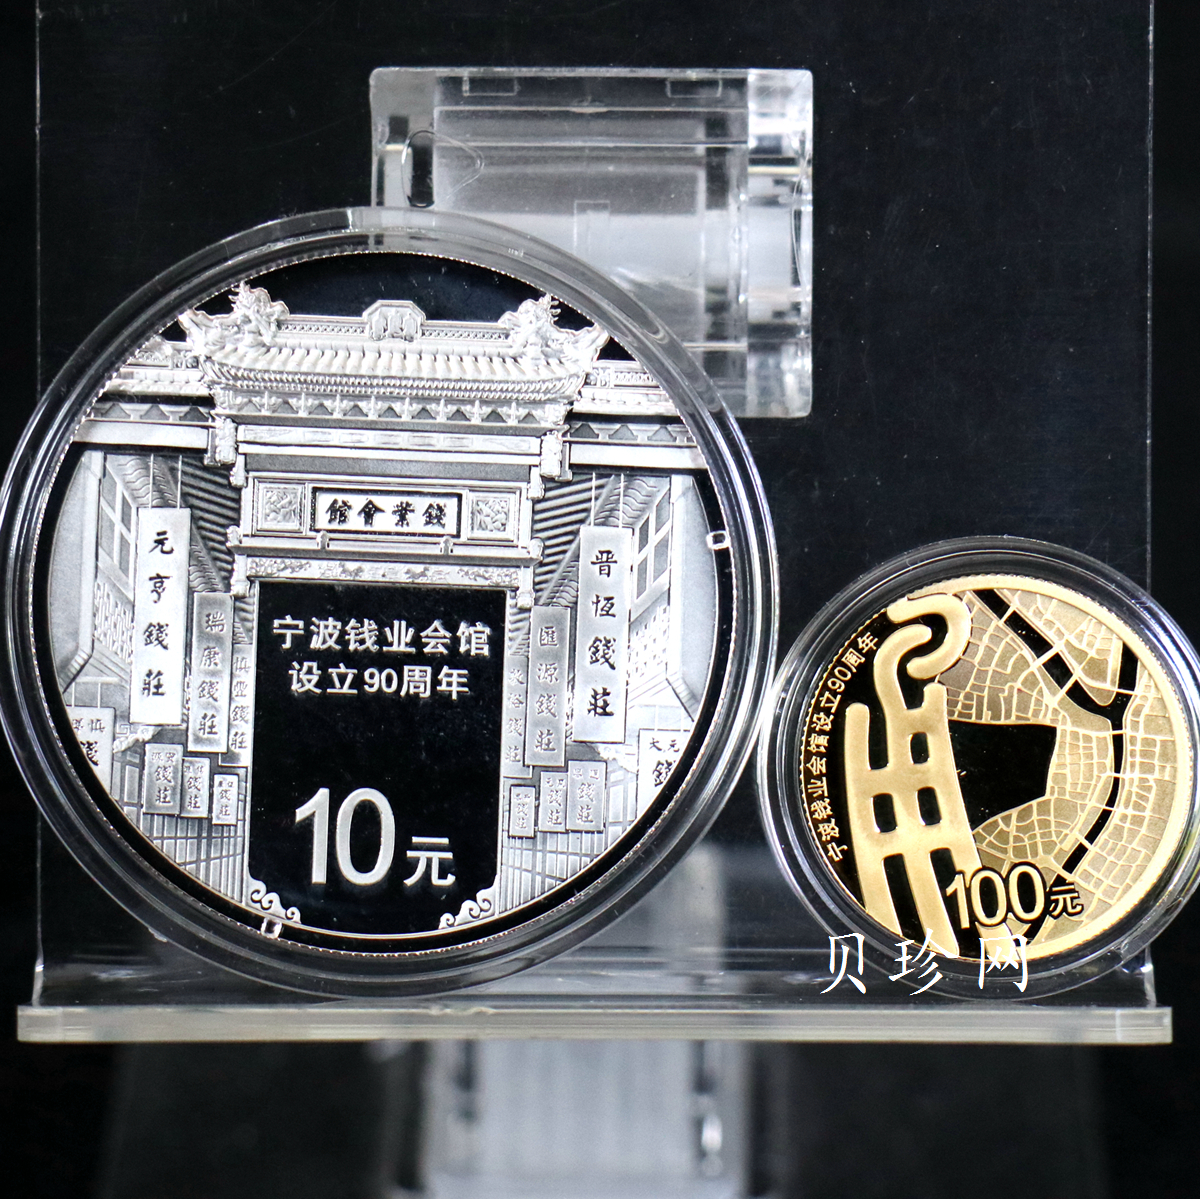 【169090】2016年宁波钱业会馆设立90周年精制金银币2枚一套